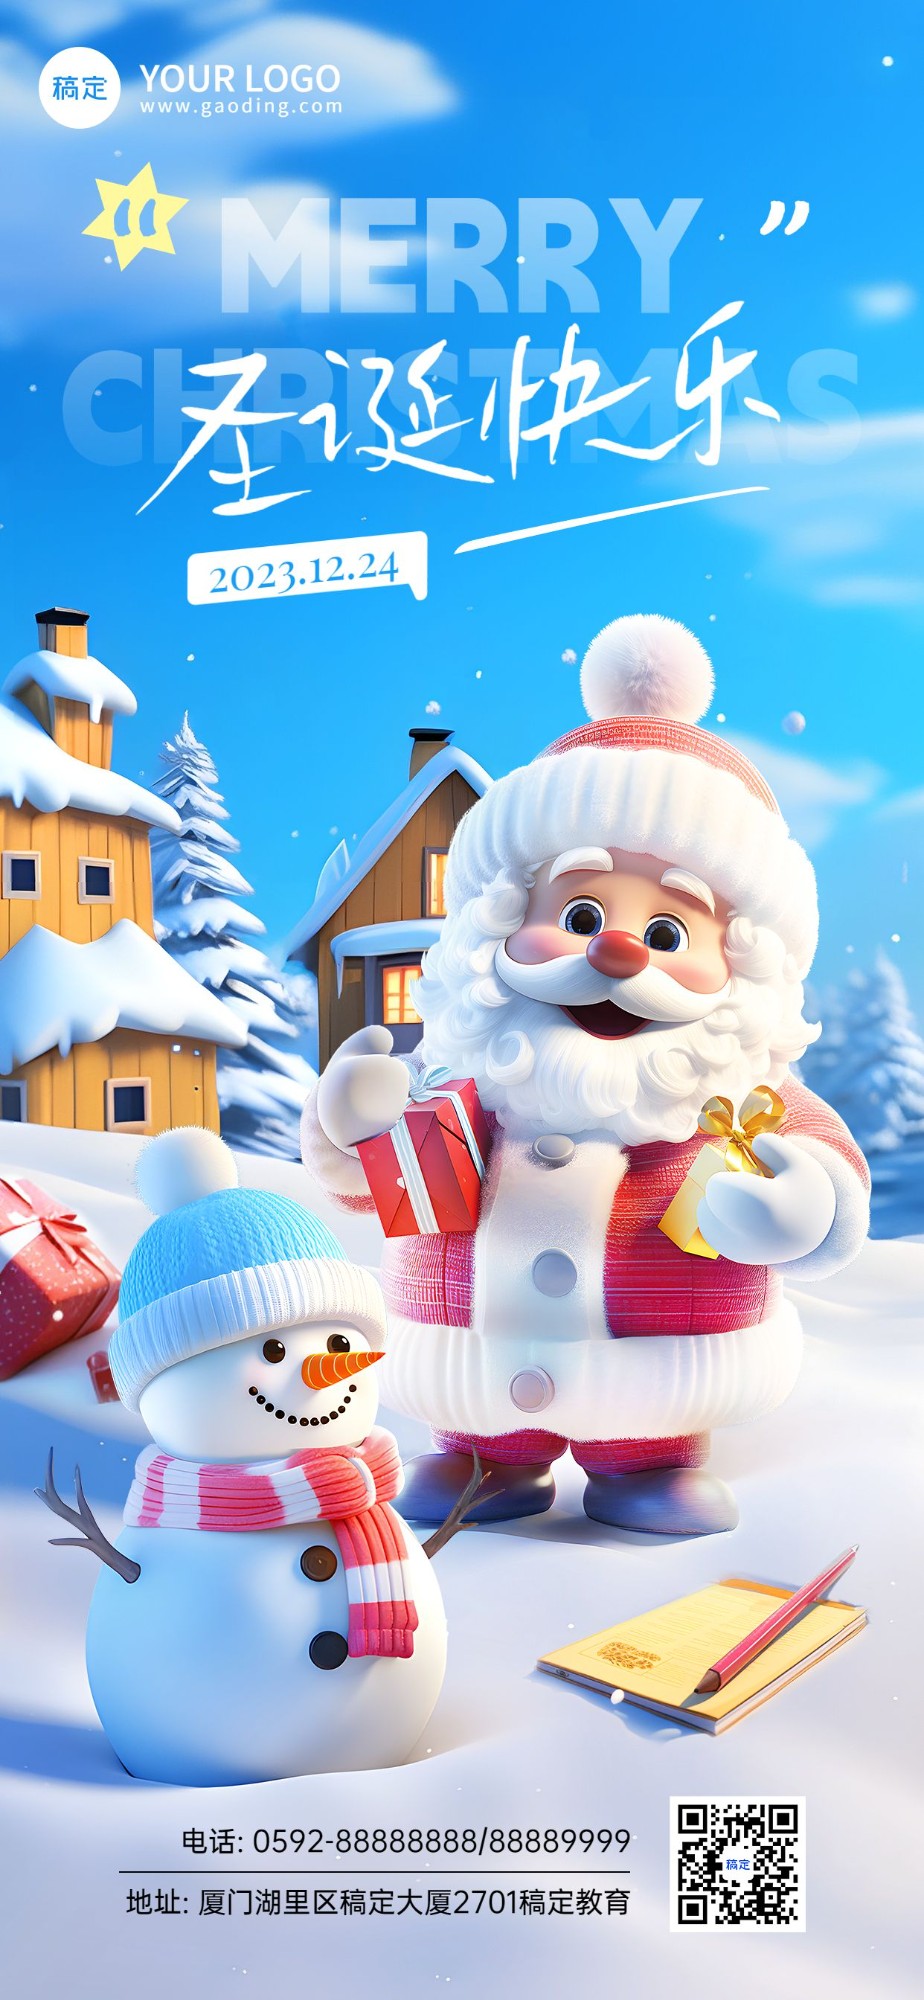 圣诞节教育行业祝福3D毛绒生长手机海报AIGC